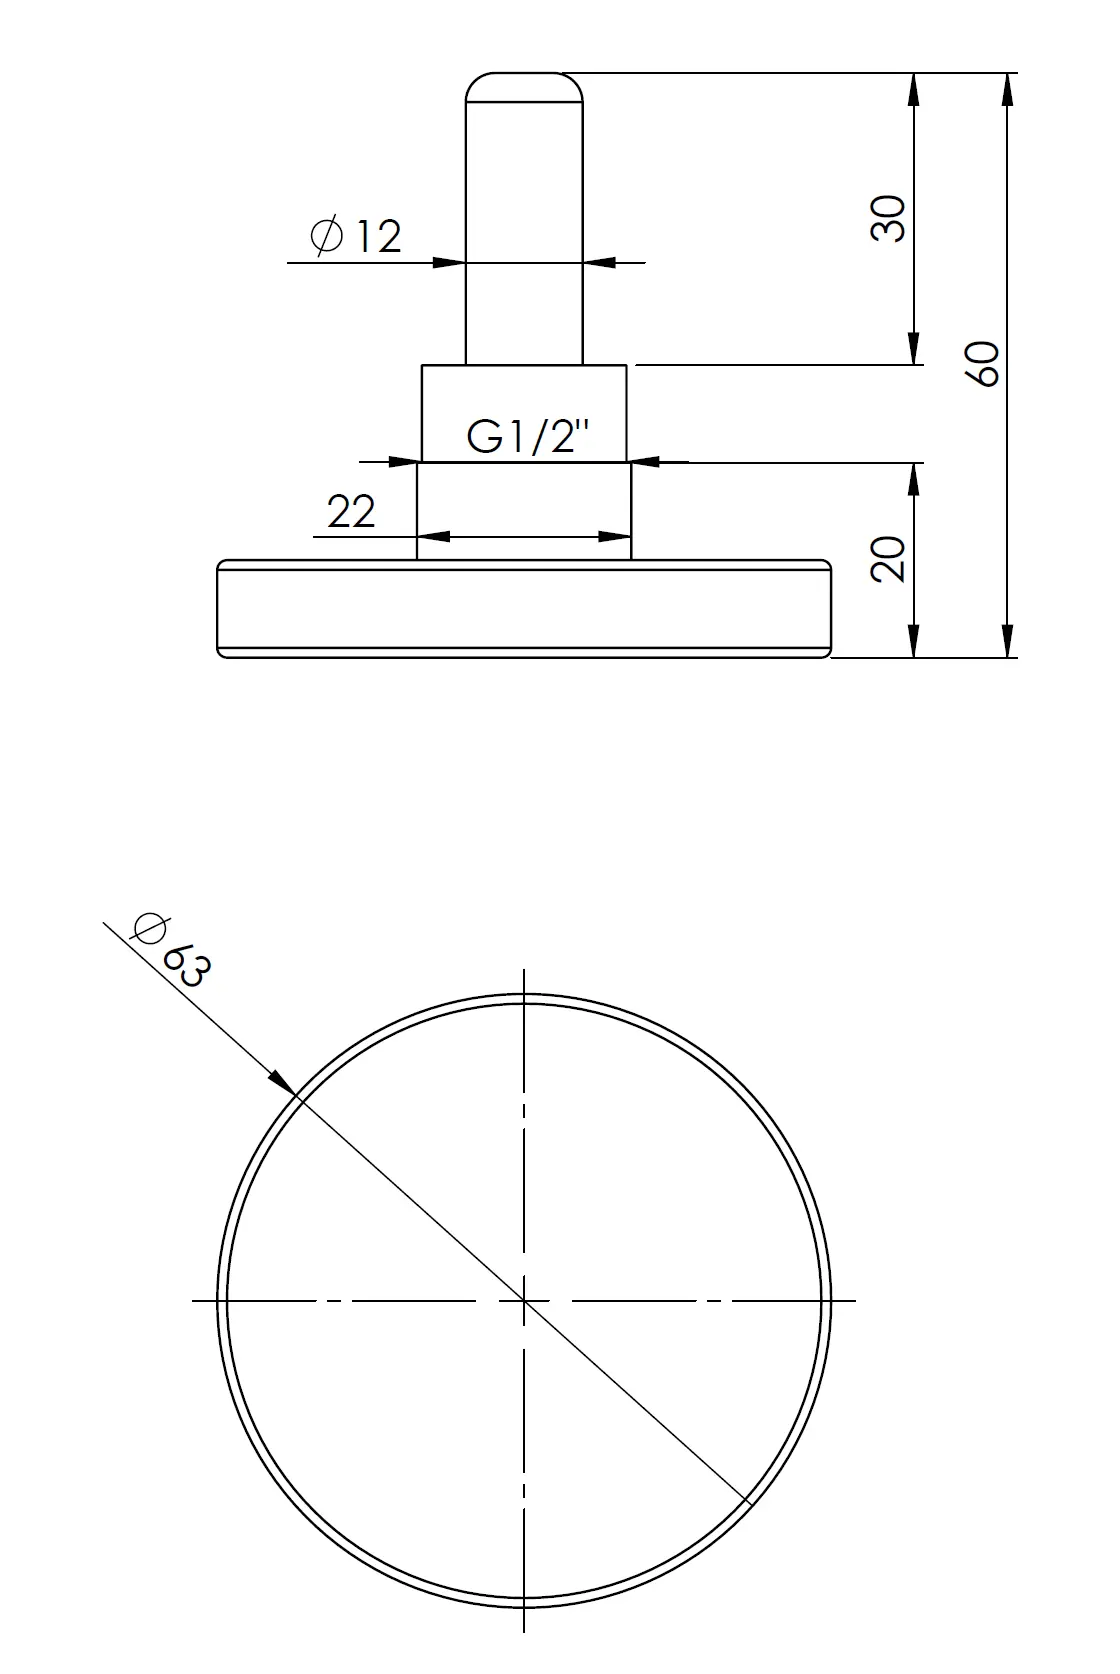 Termometr bimetaliczny BiTh 63, fi63 mm, 0÷160°C, L 40 mm, G1/2", ax, kl. 2 - budowa